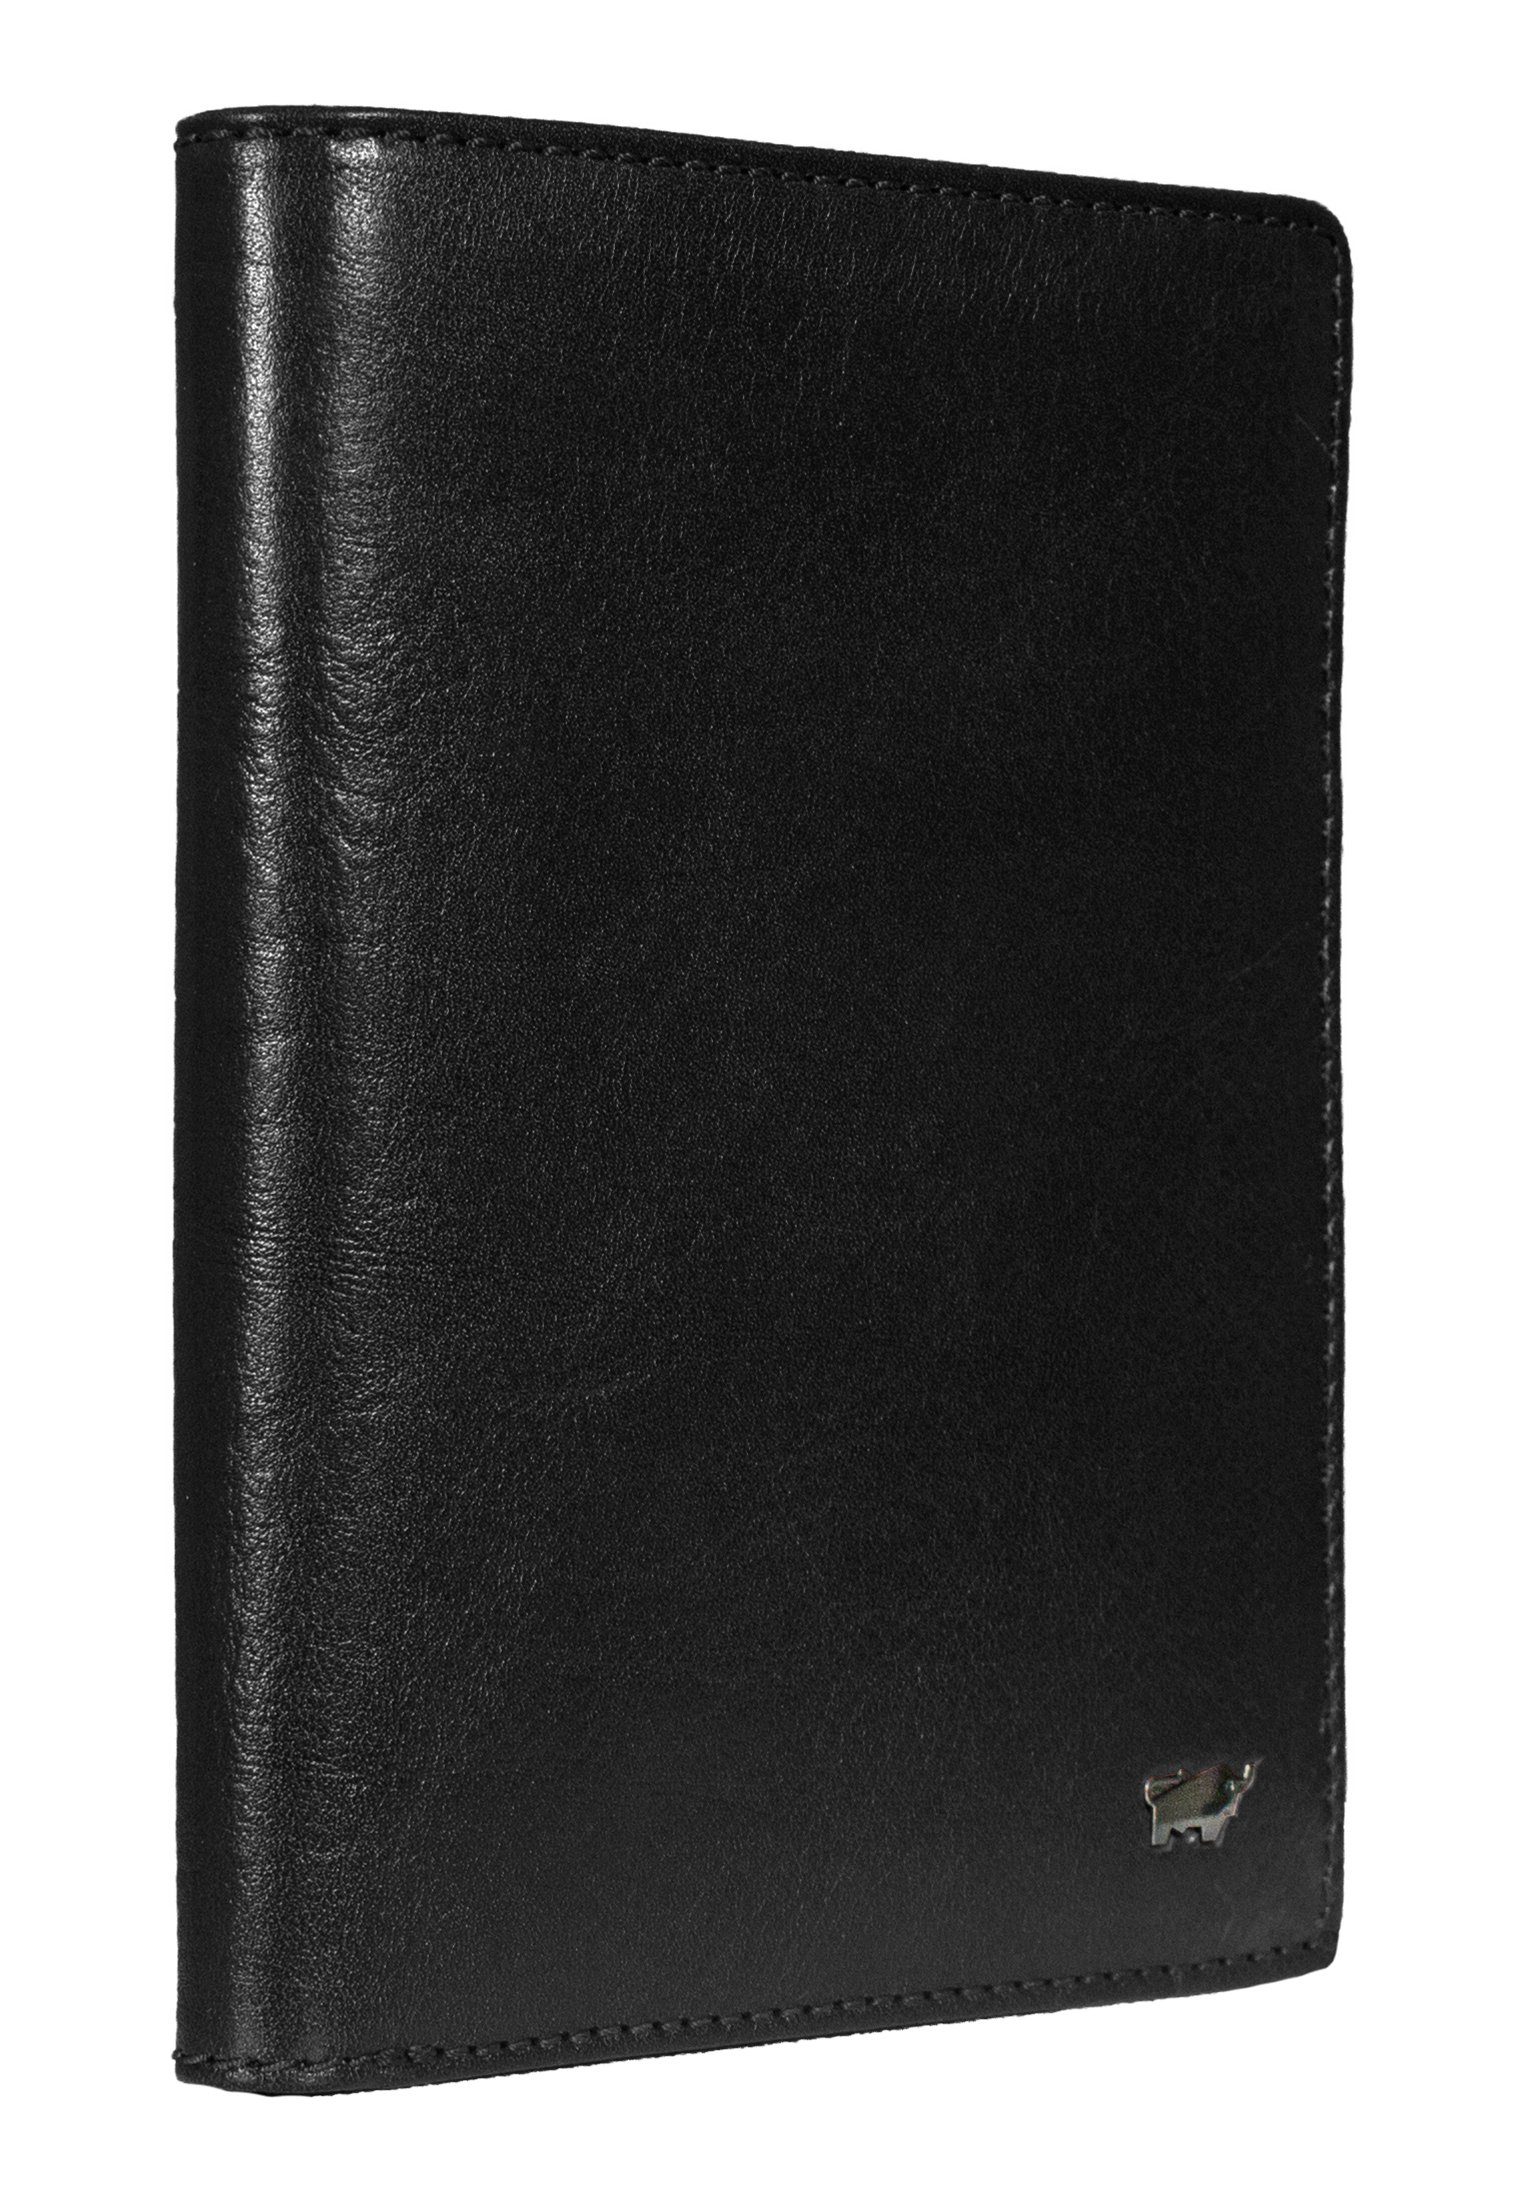 Braun Büffel Brieftasche COUNTRY schwarz mit Brieftasche, RFID Stiftehalter